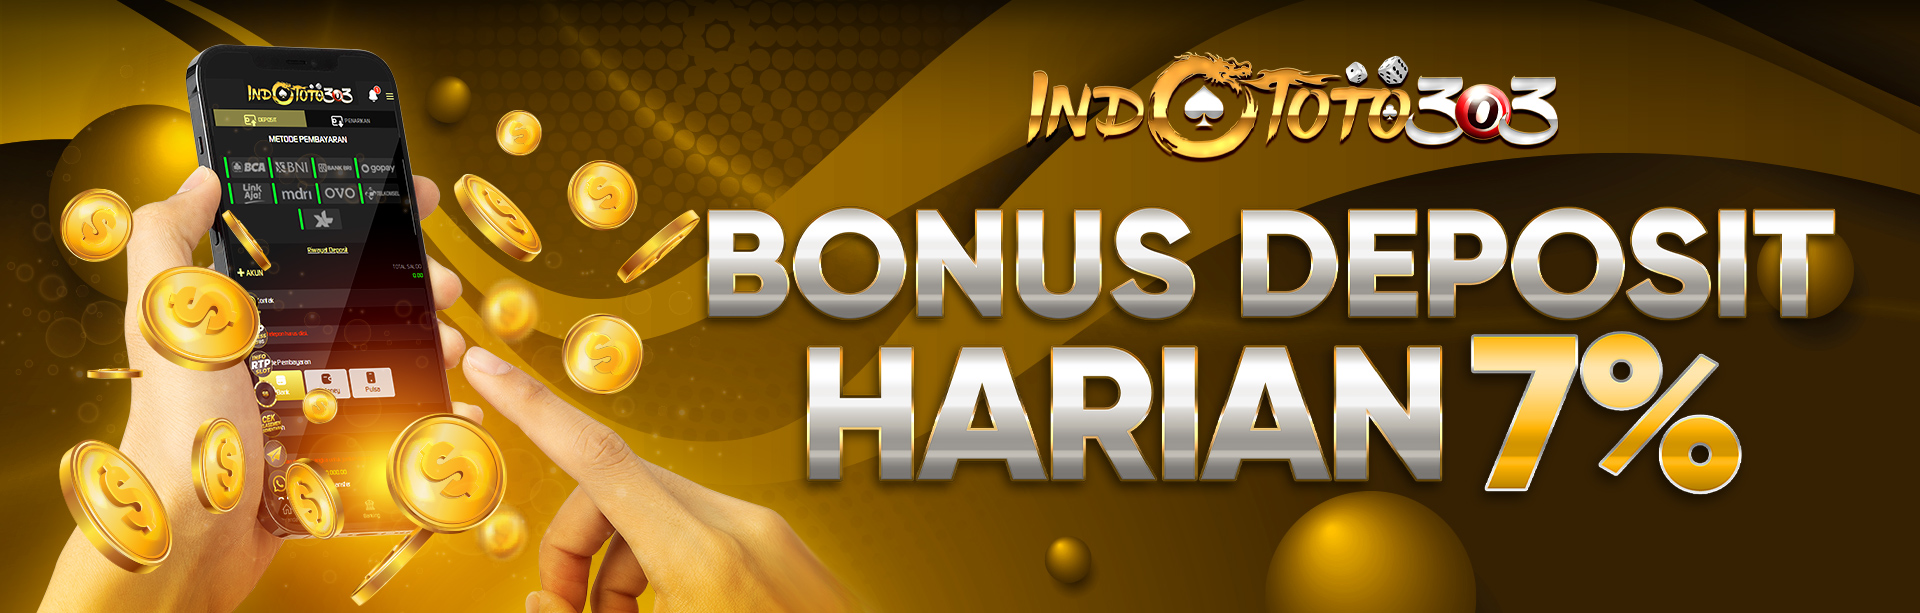 *Bonus Deposit Harian 7%